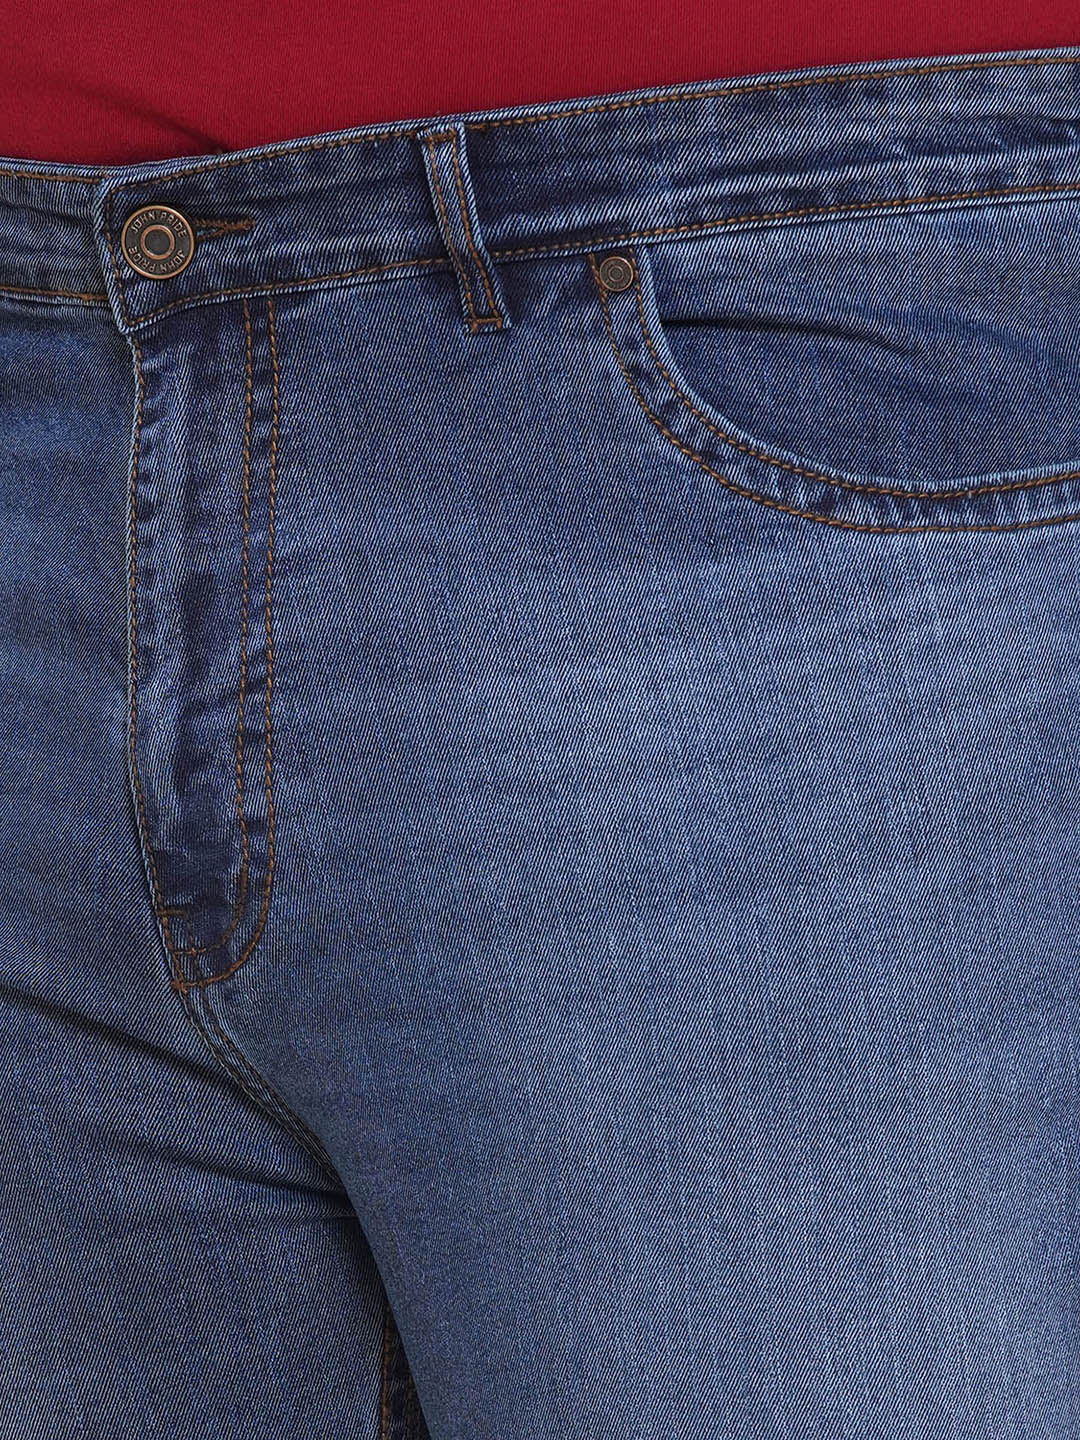 bottomwear/jeans/JPJ27017/jpj27017-2.jpg